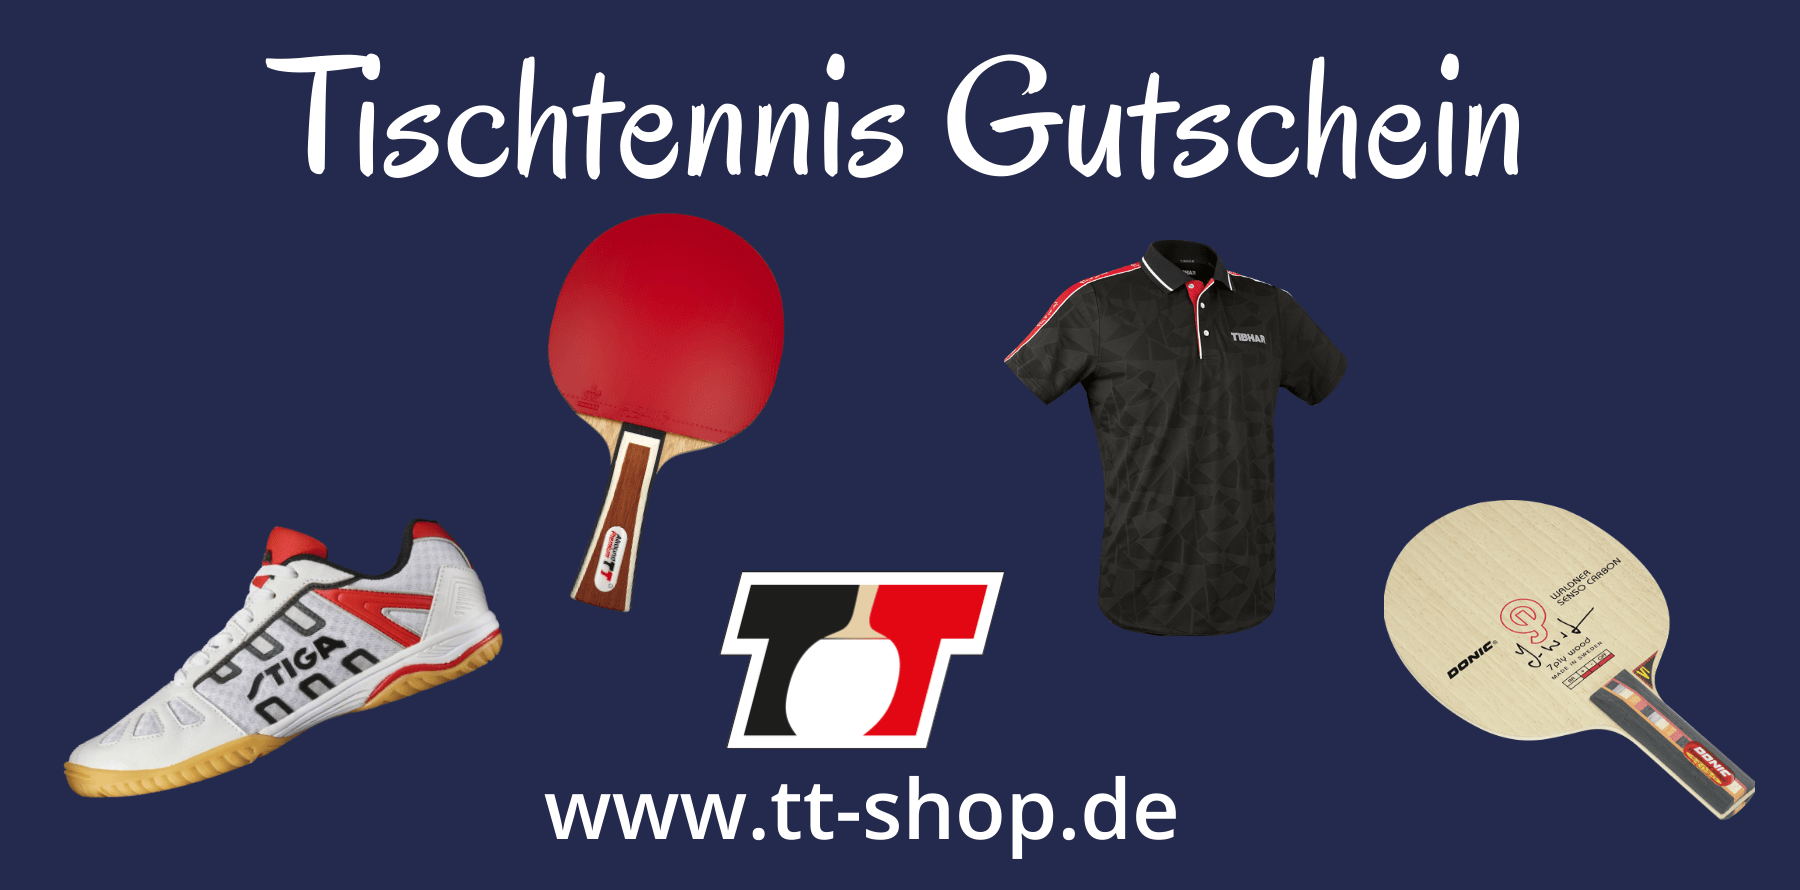 ᐅ Tischtennis Gutschein Schenke nichts Falsches!